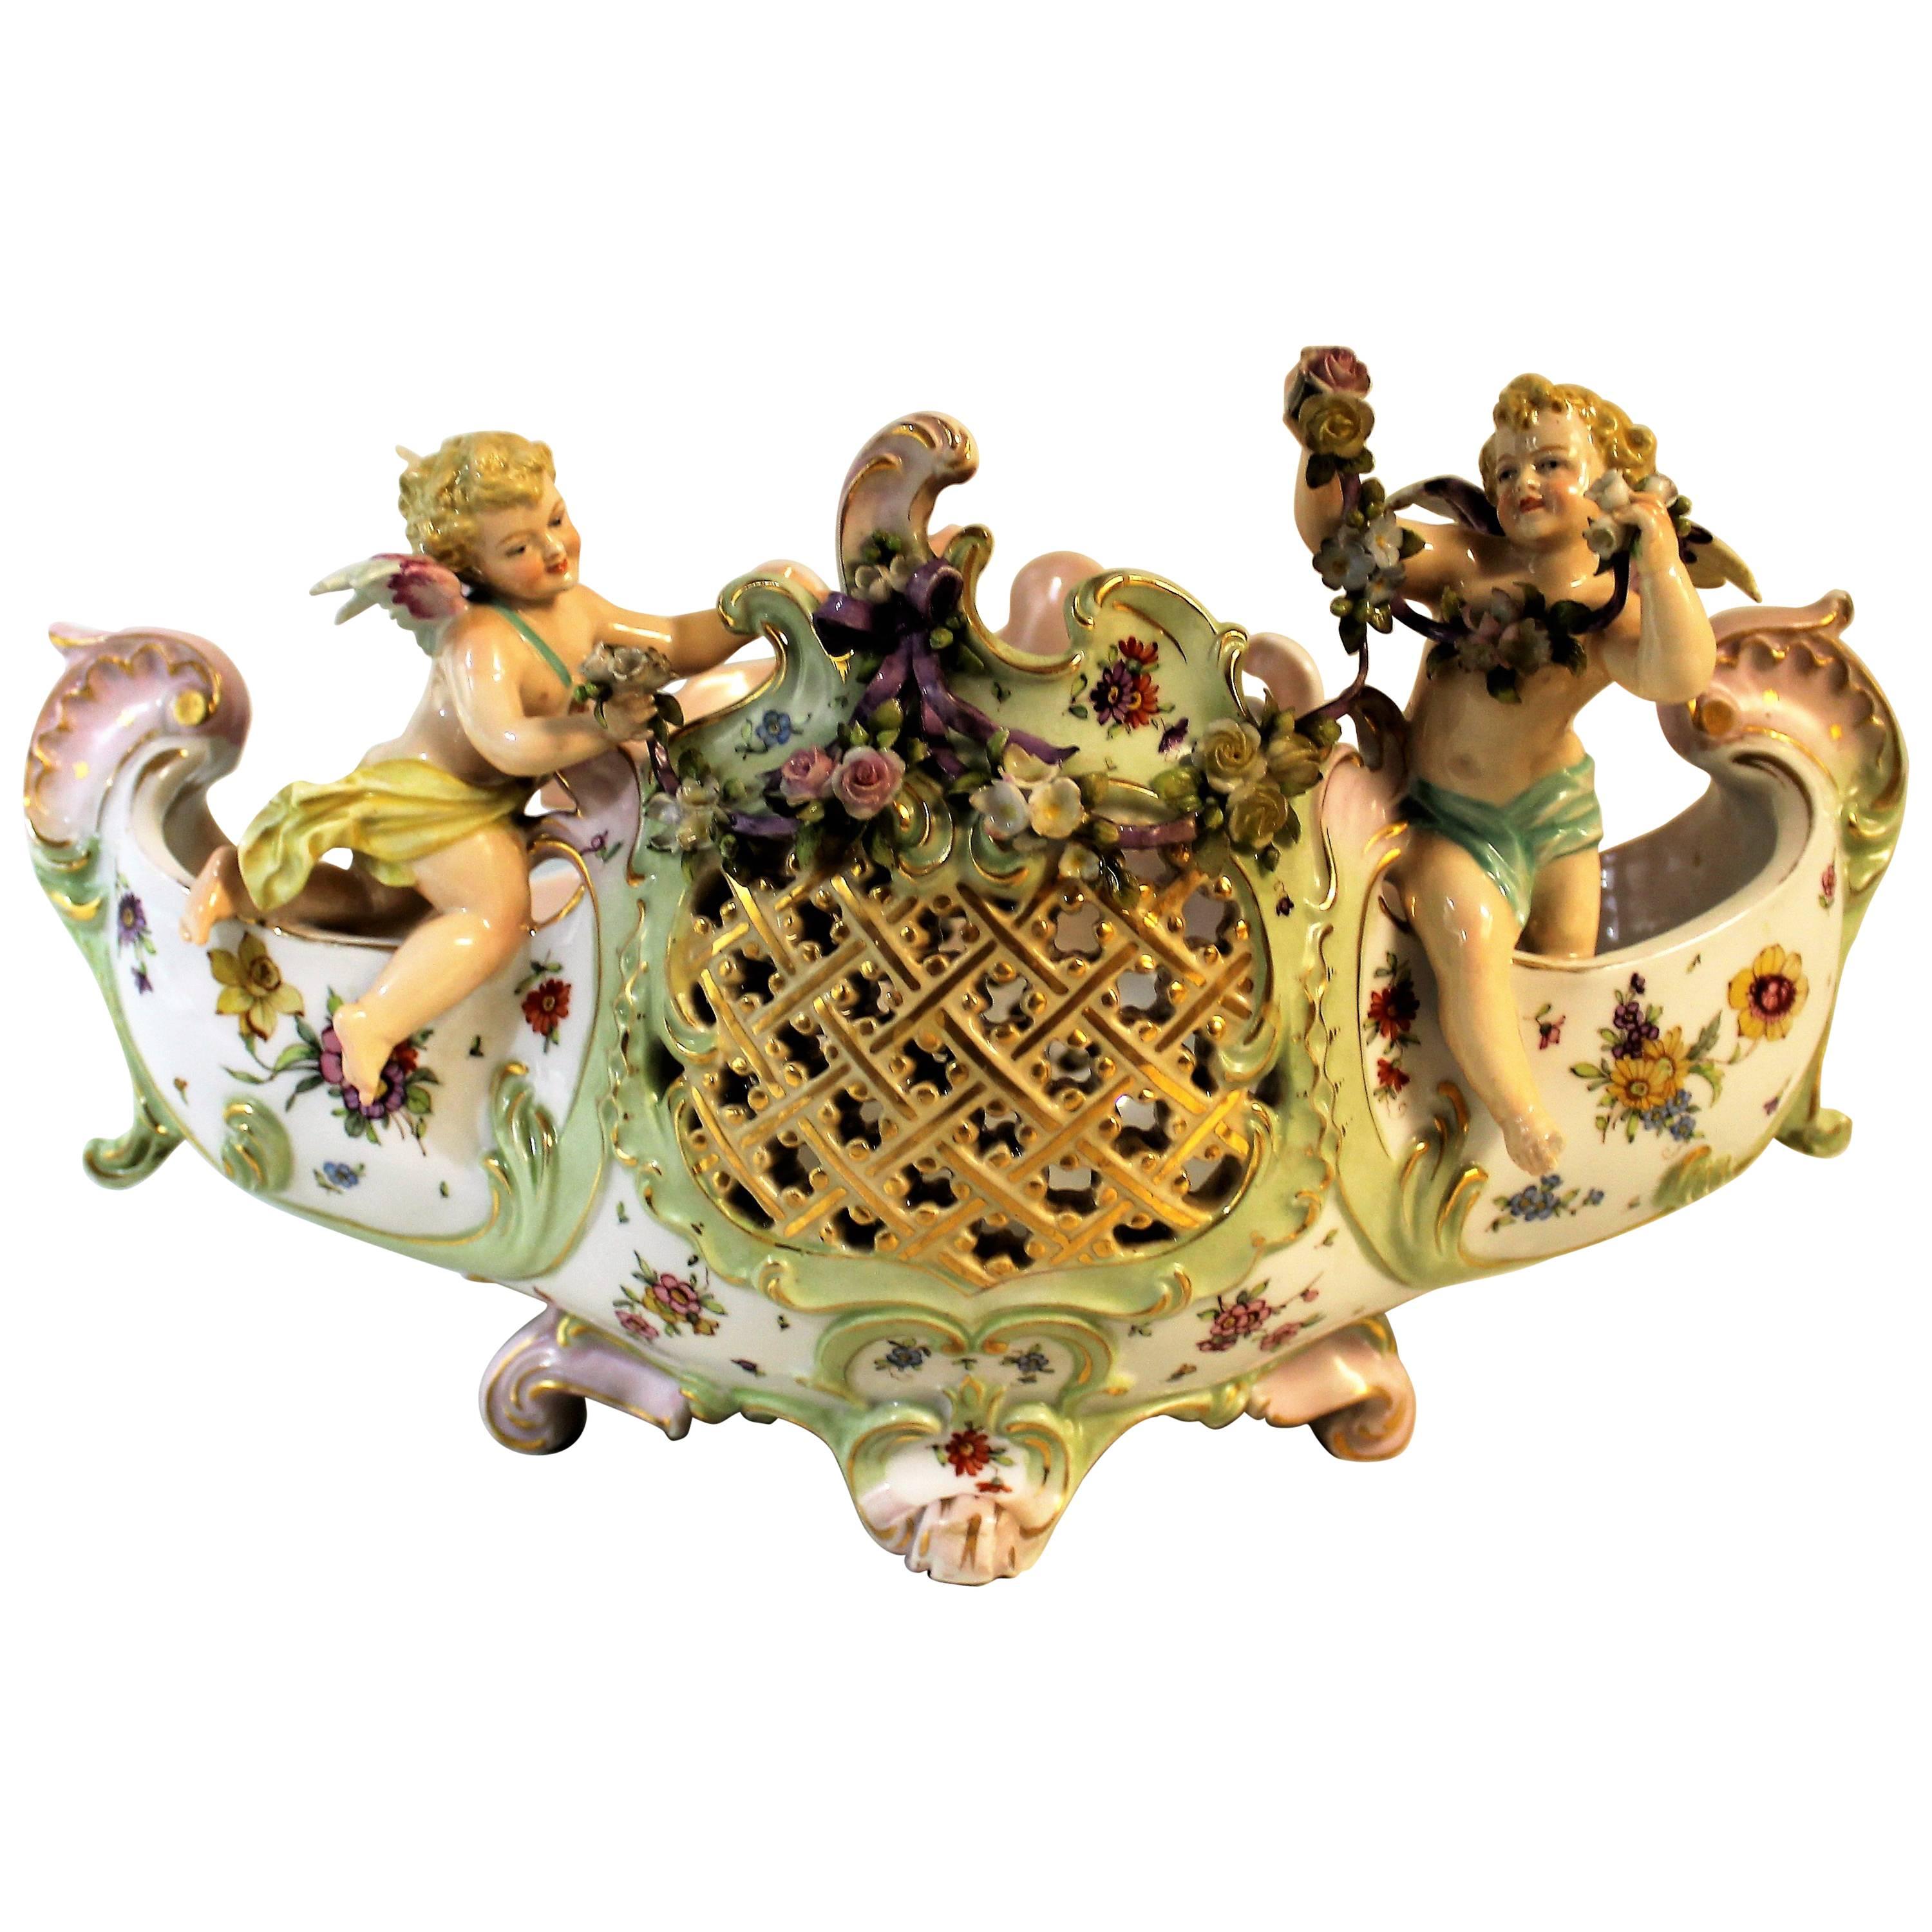 Schale E & A Muller 'Corona' aus Porzellan mit figuraler Cherub-Jardinière oder Tafelaufsatz